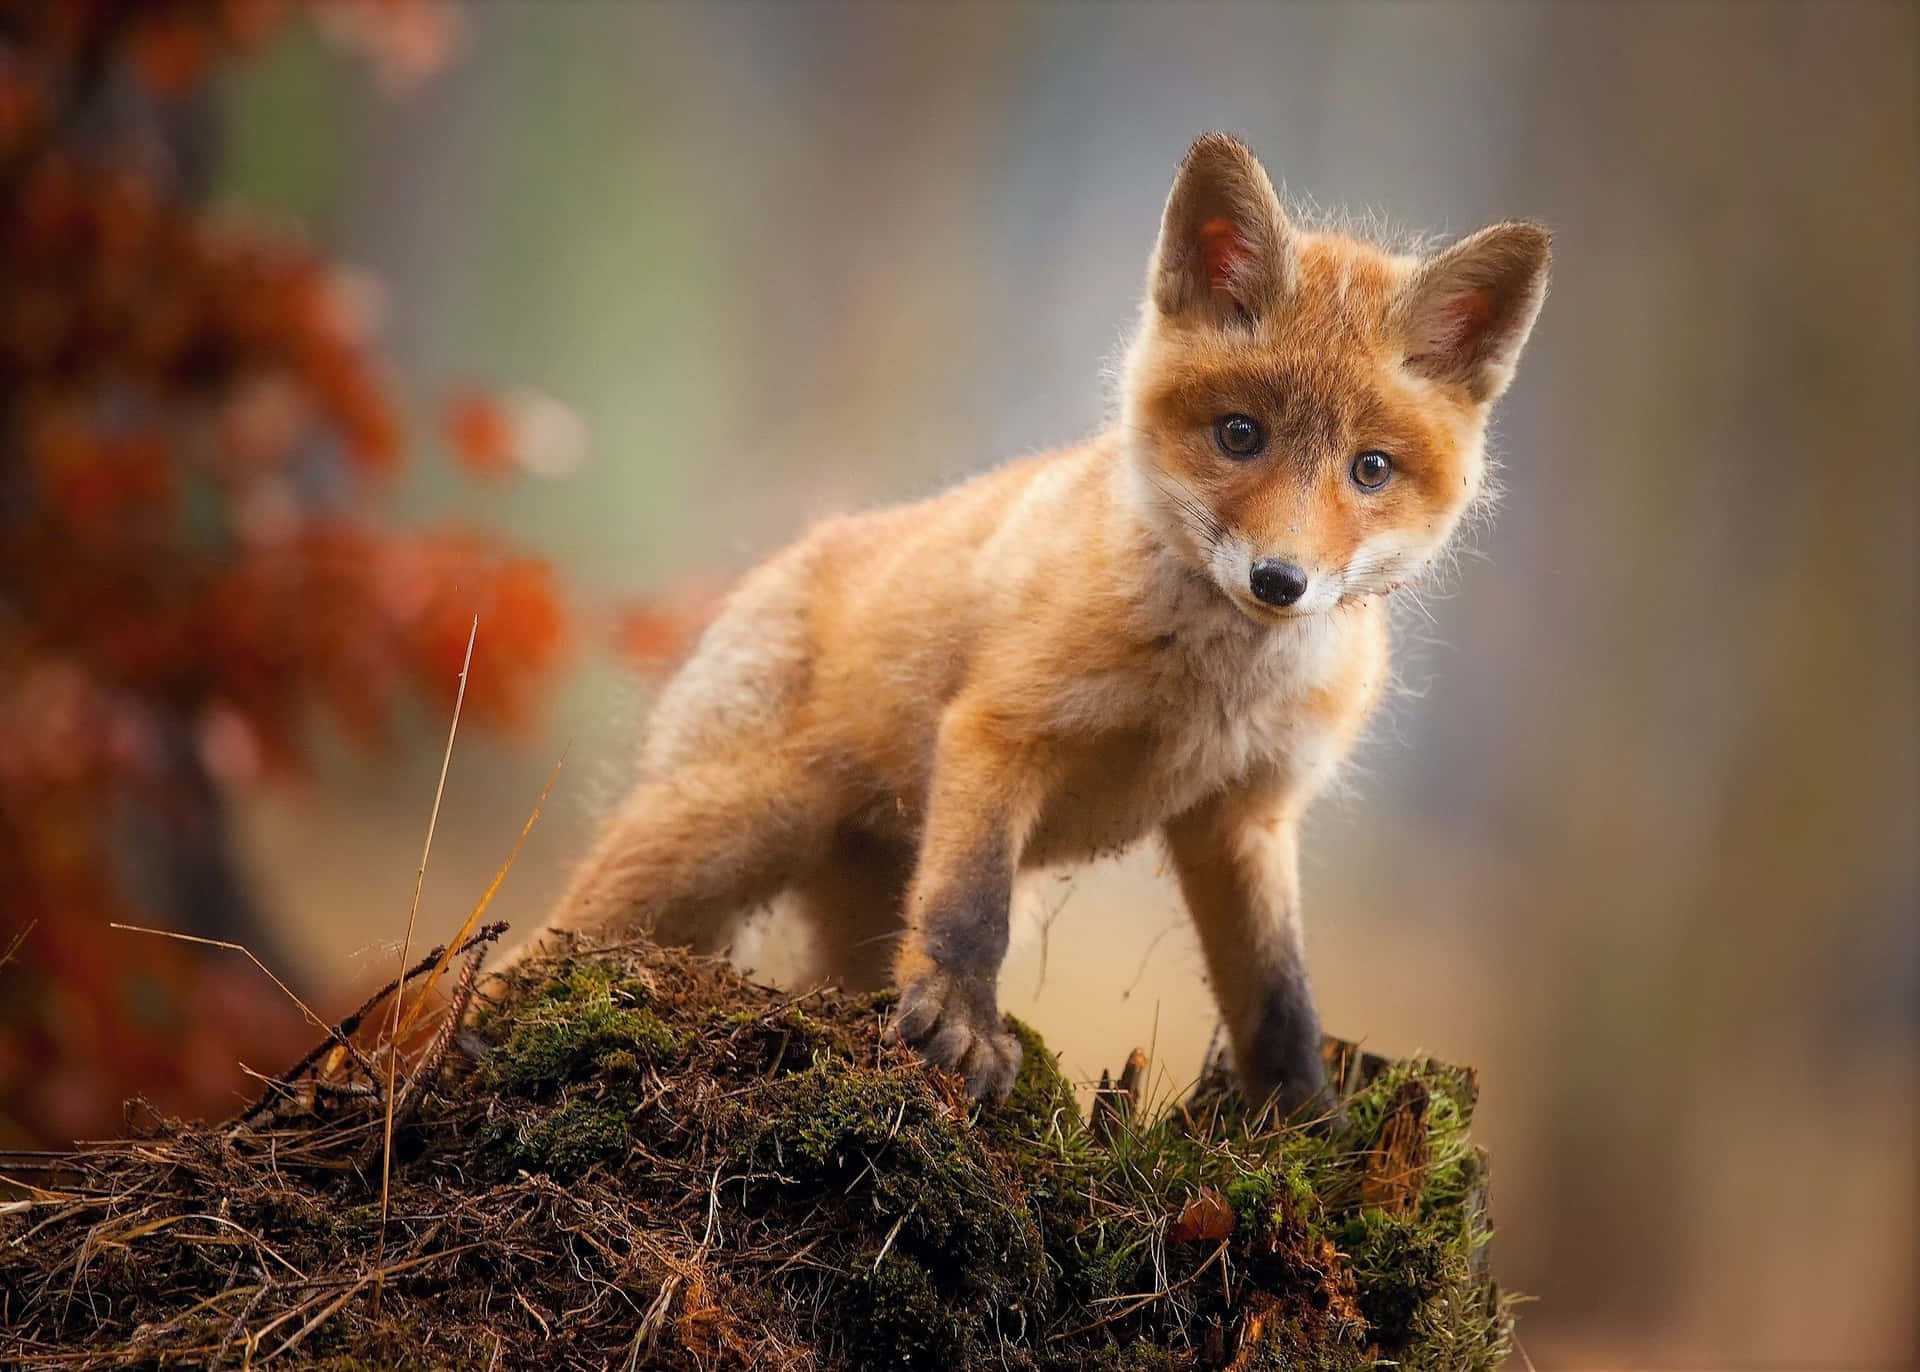 A Curious Baby Fox